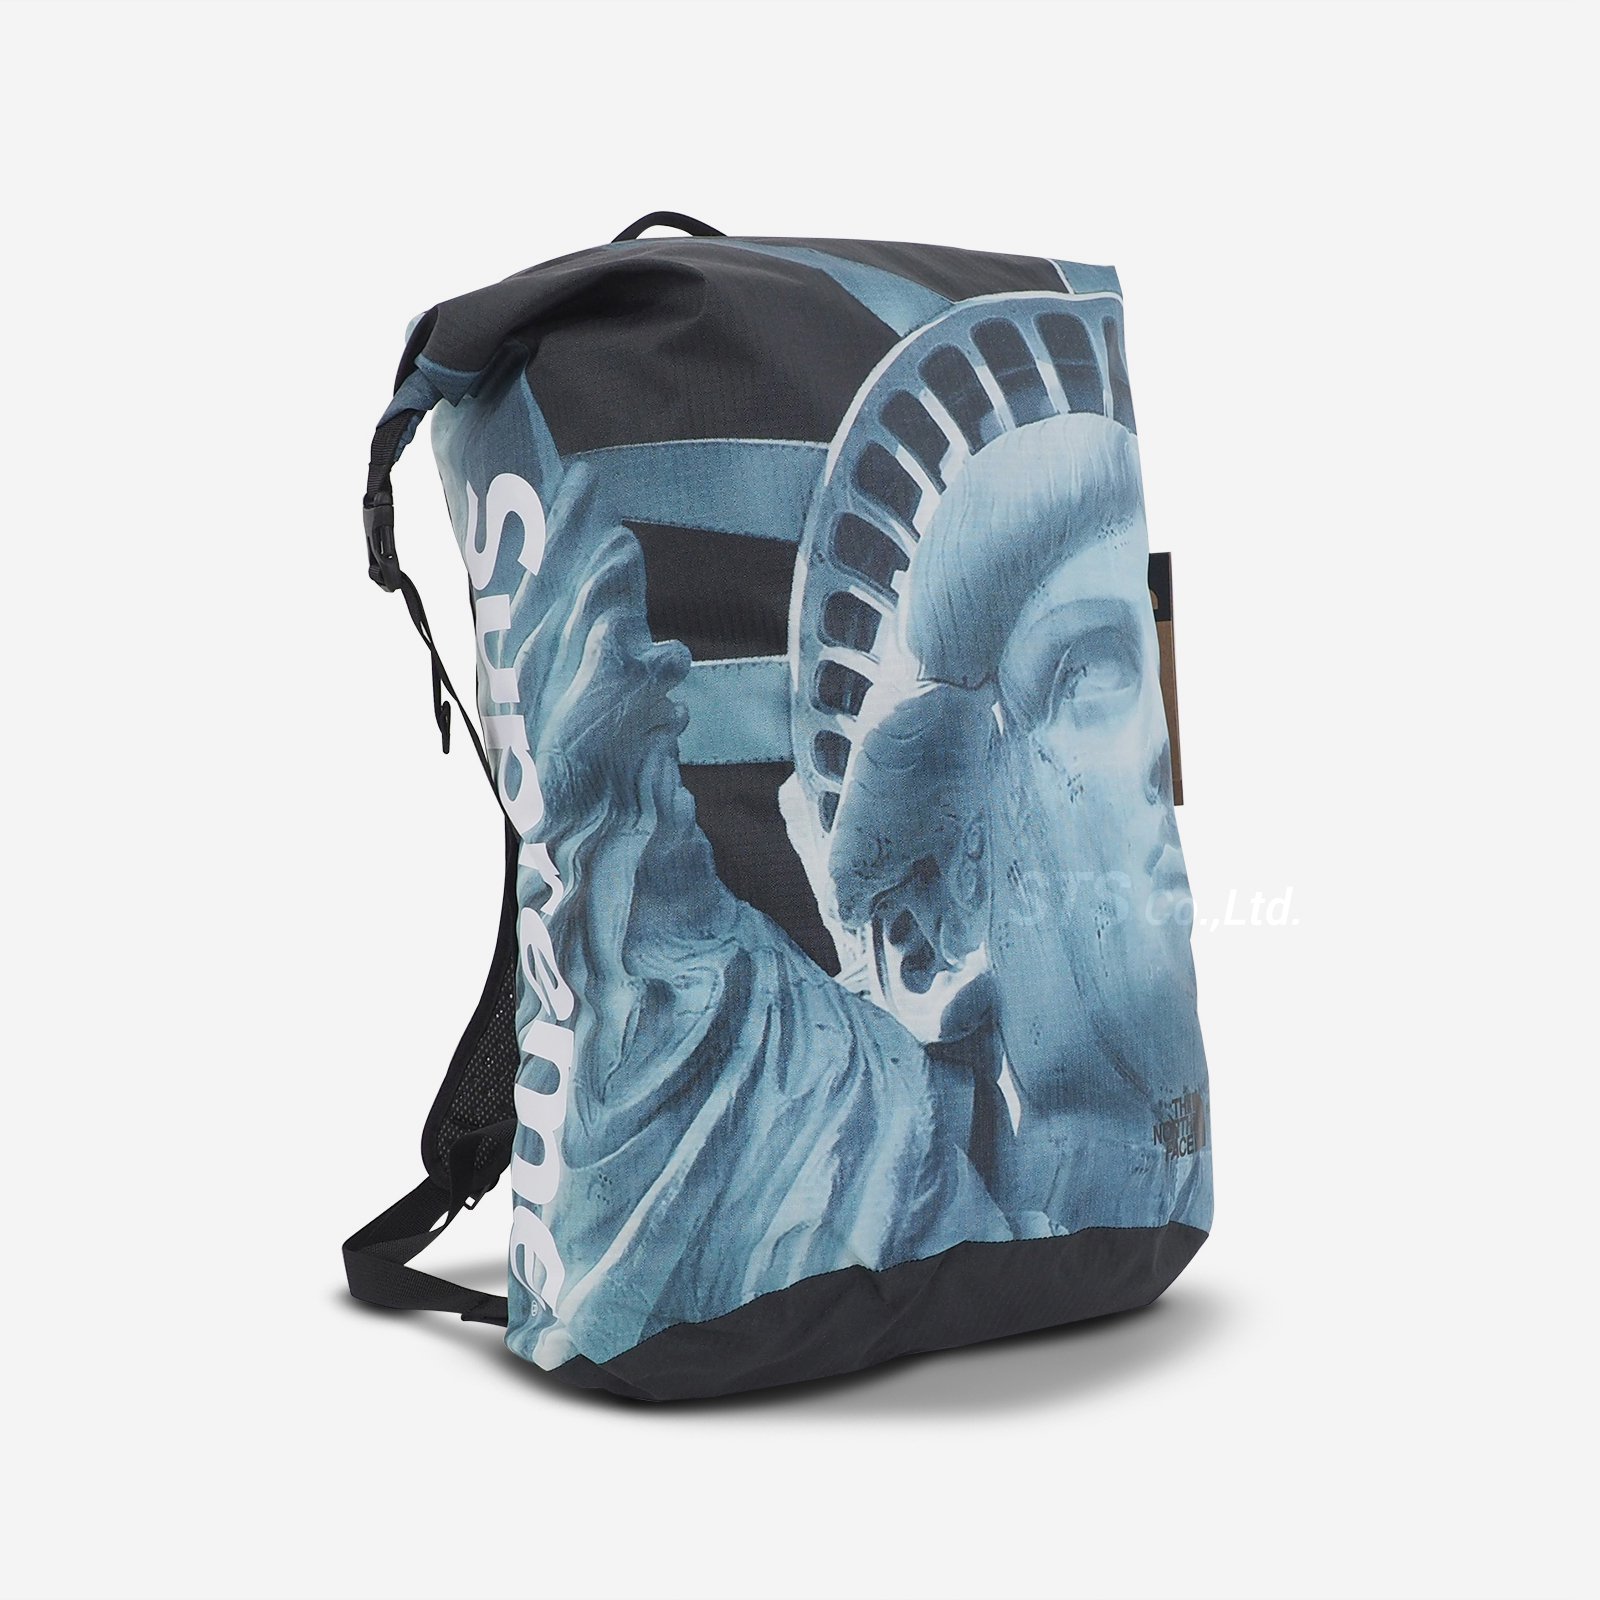 確認しましたがありませんでしたSUPREME×THE NORTH FACE Liberty Backpack